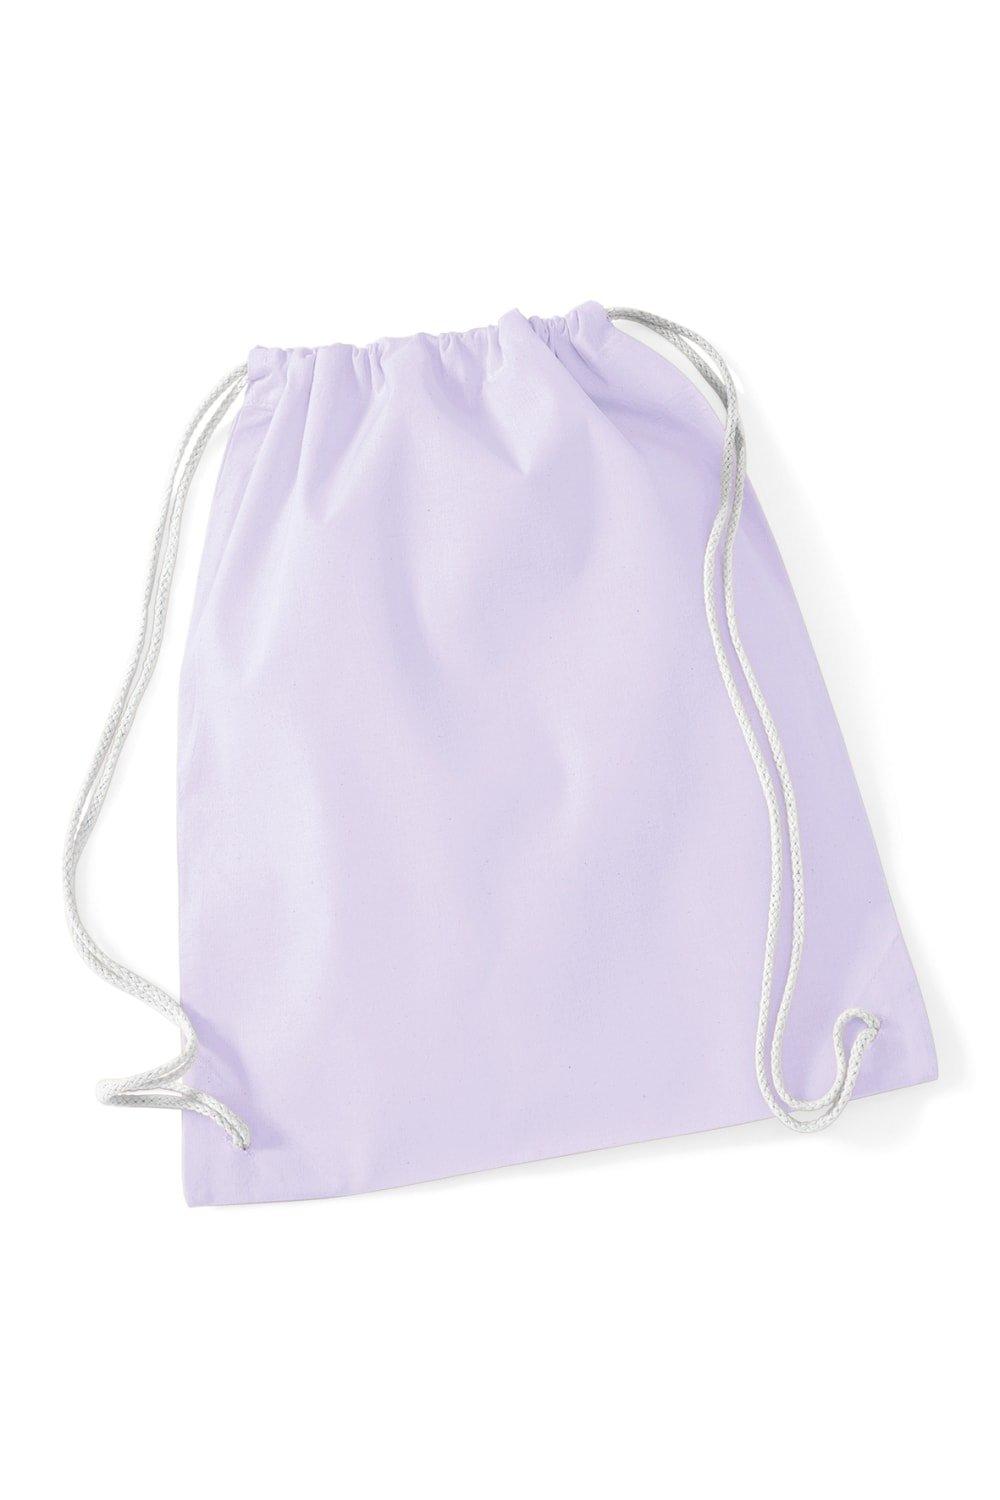 Хлопковая сумка Gymsac - 12 литров (2 шт. в упаковке) Westford Mill, фиолетовый